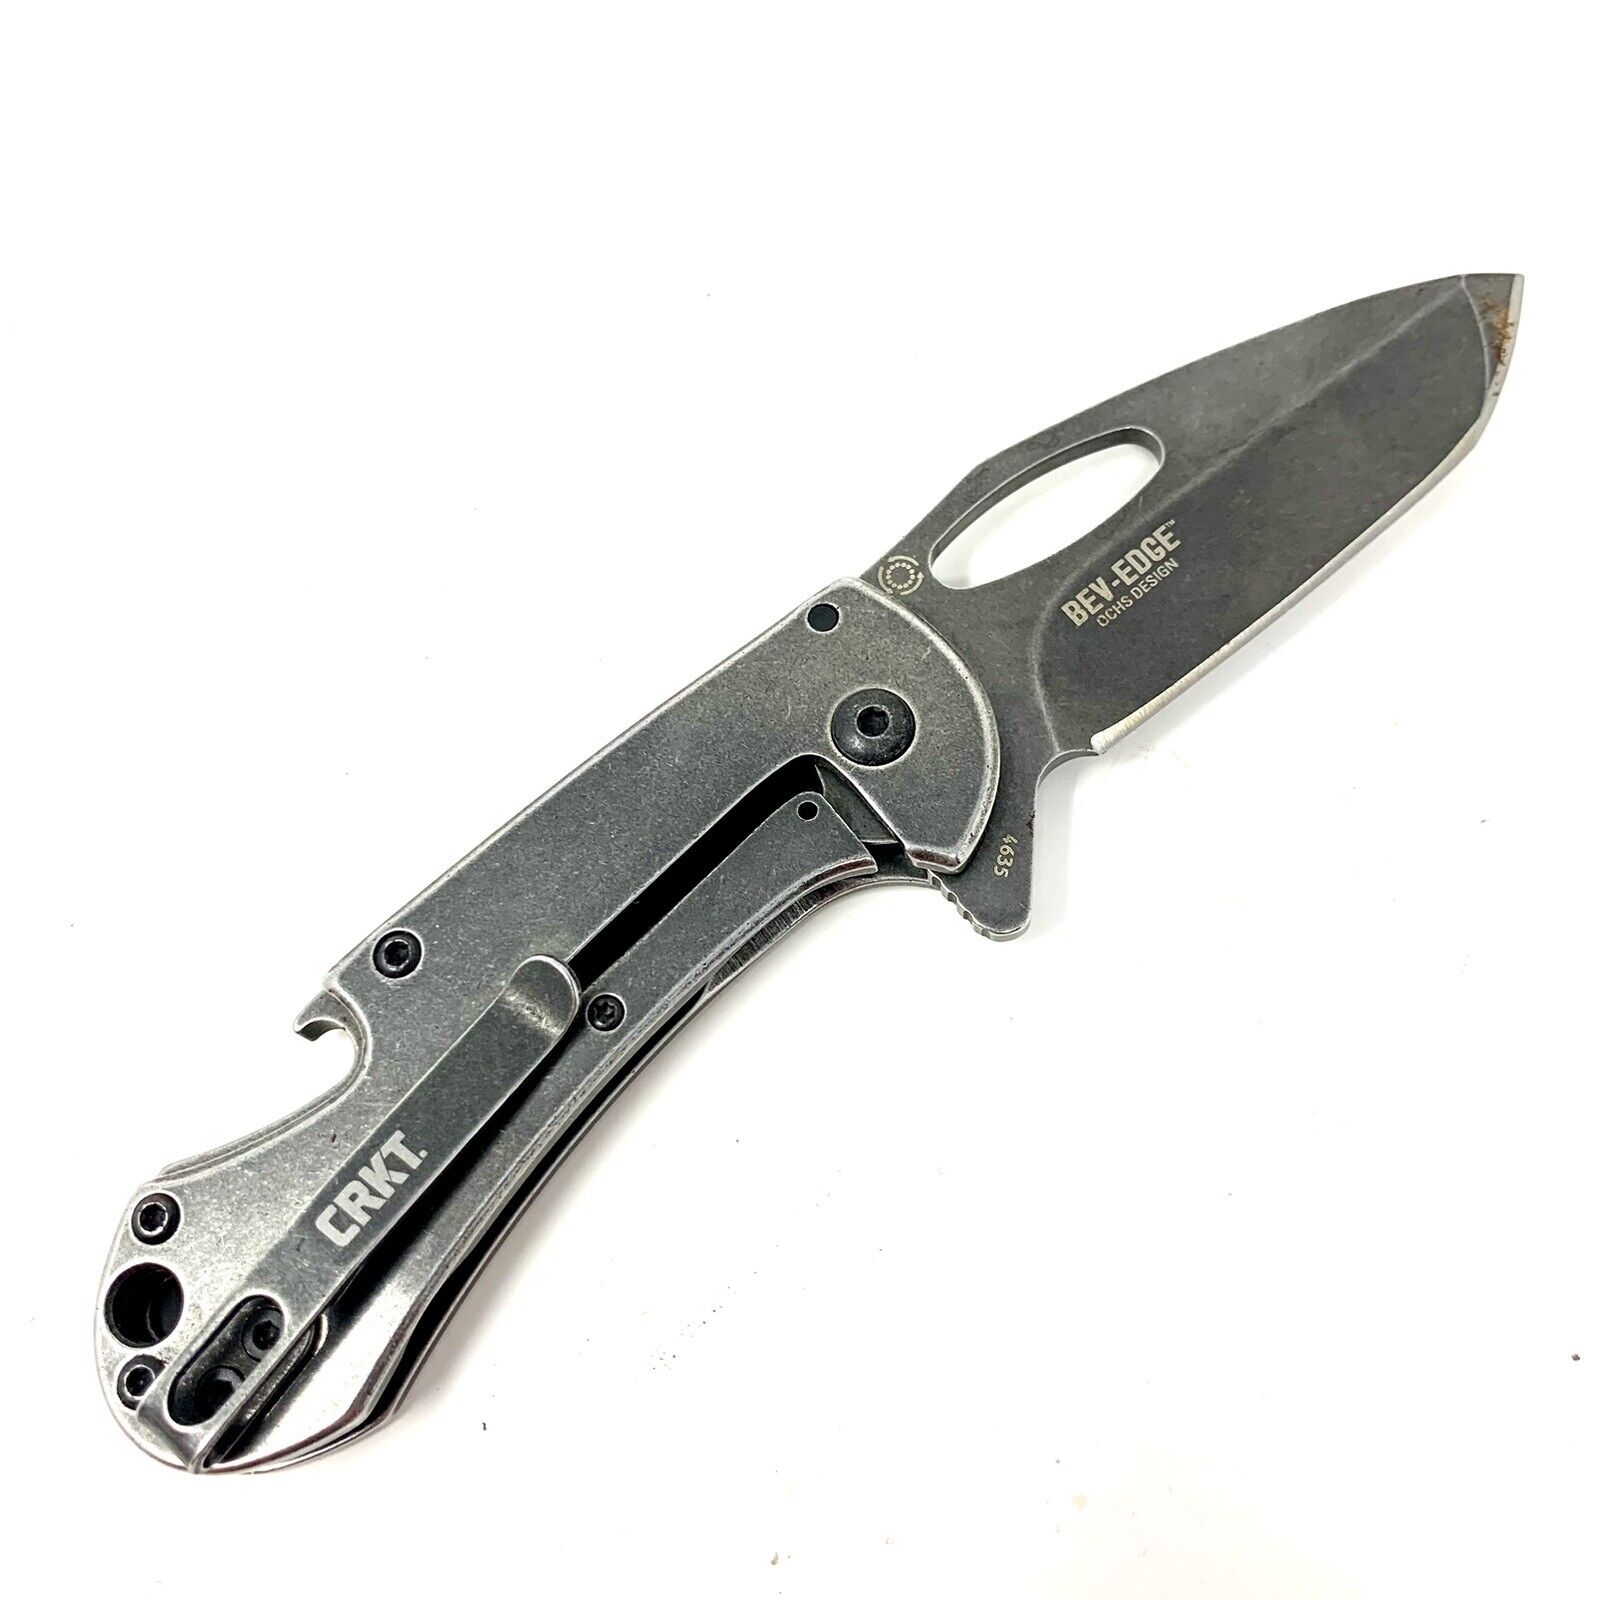 Columbia River CRKT Lock Back Pocket Knife Model 4635 Tano Blade Bev Edge